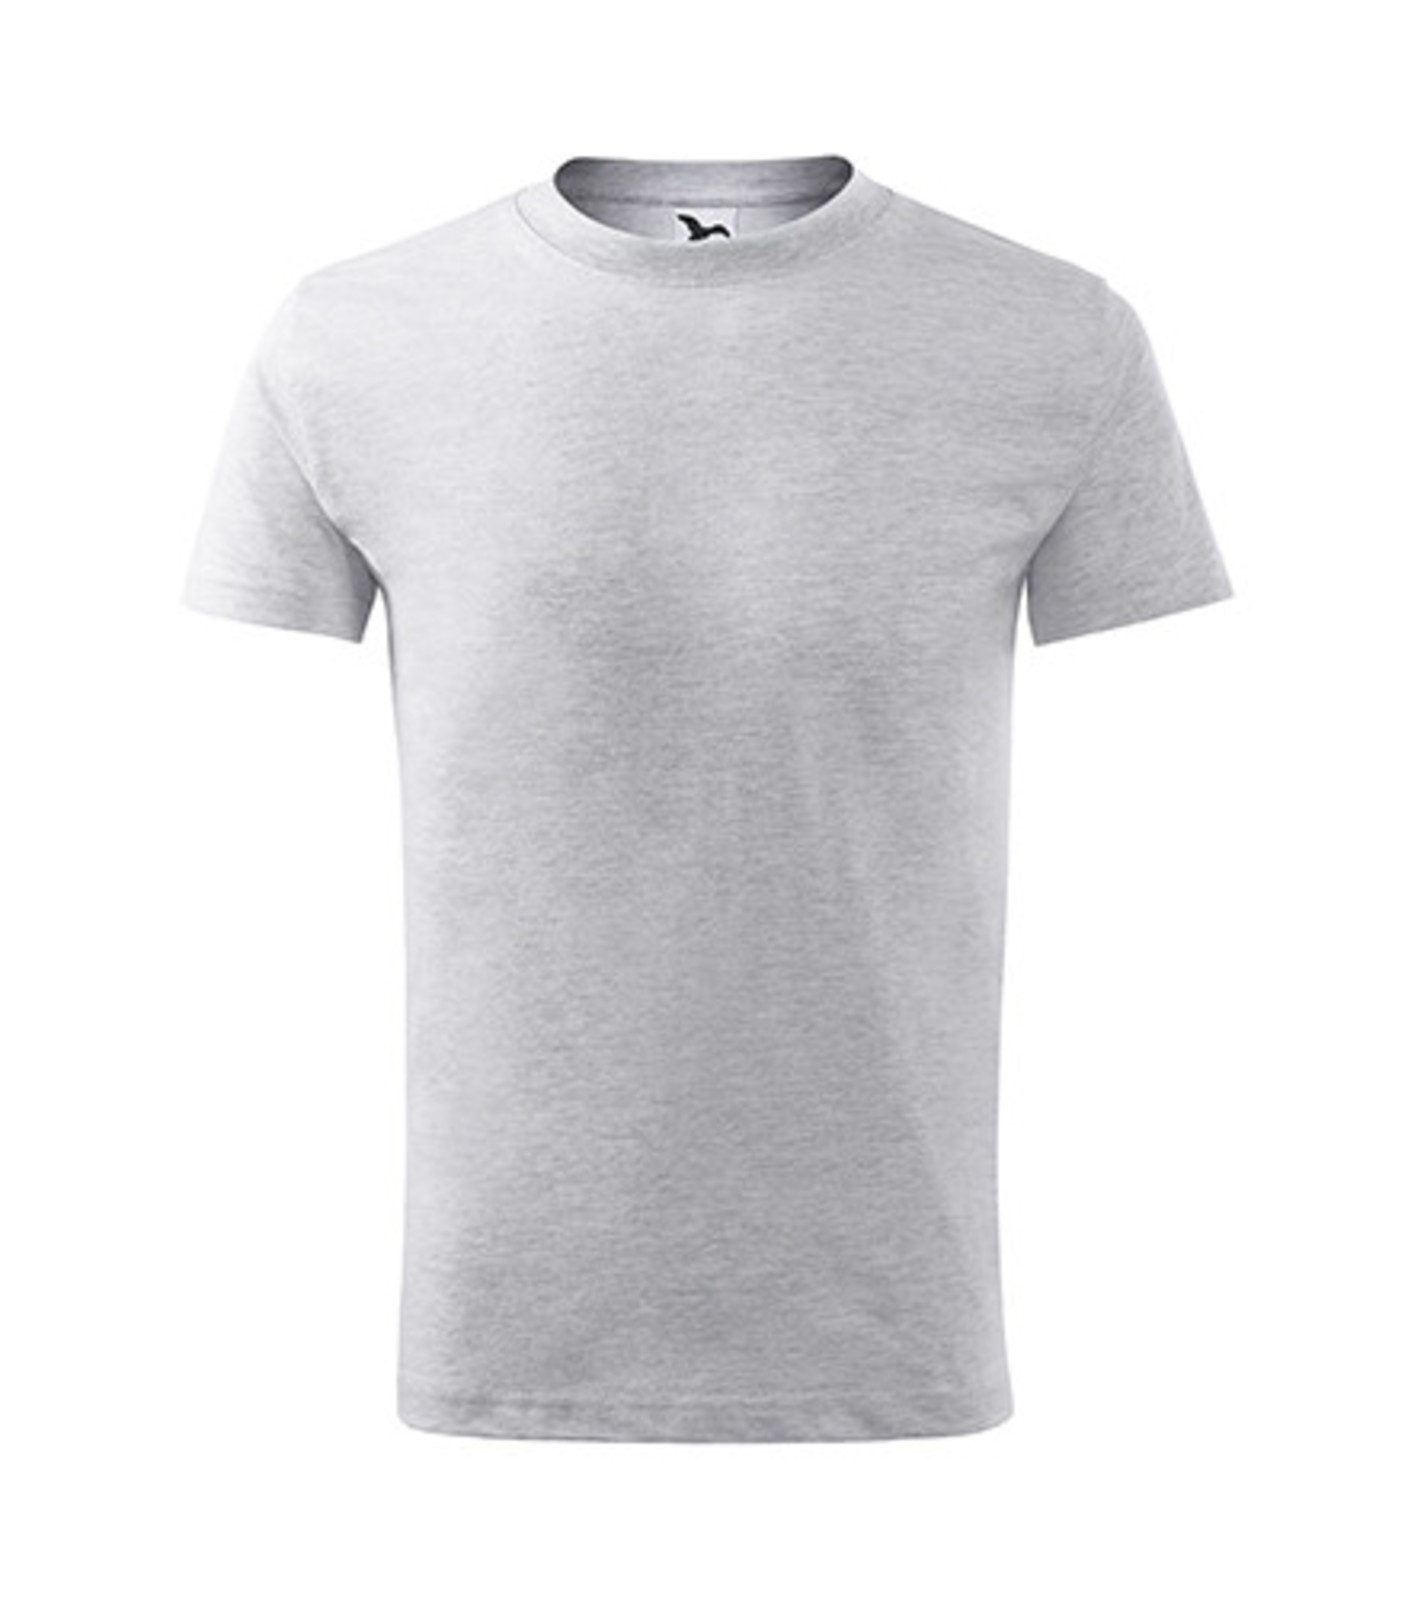 Detské tričko Malfini Classic New 135 - veľkosť: 146, farba: svetlosivý melír